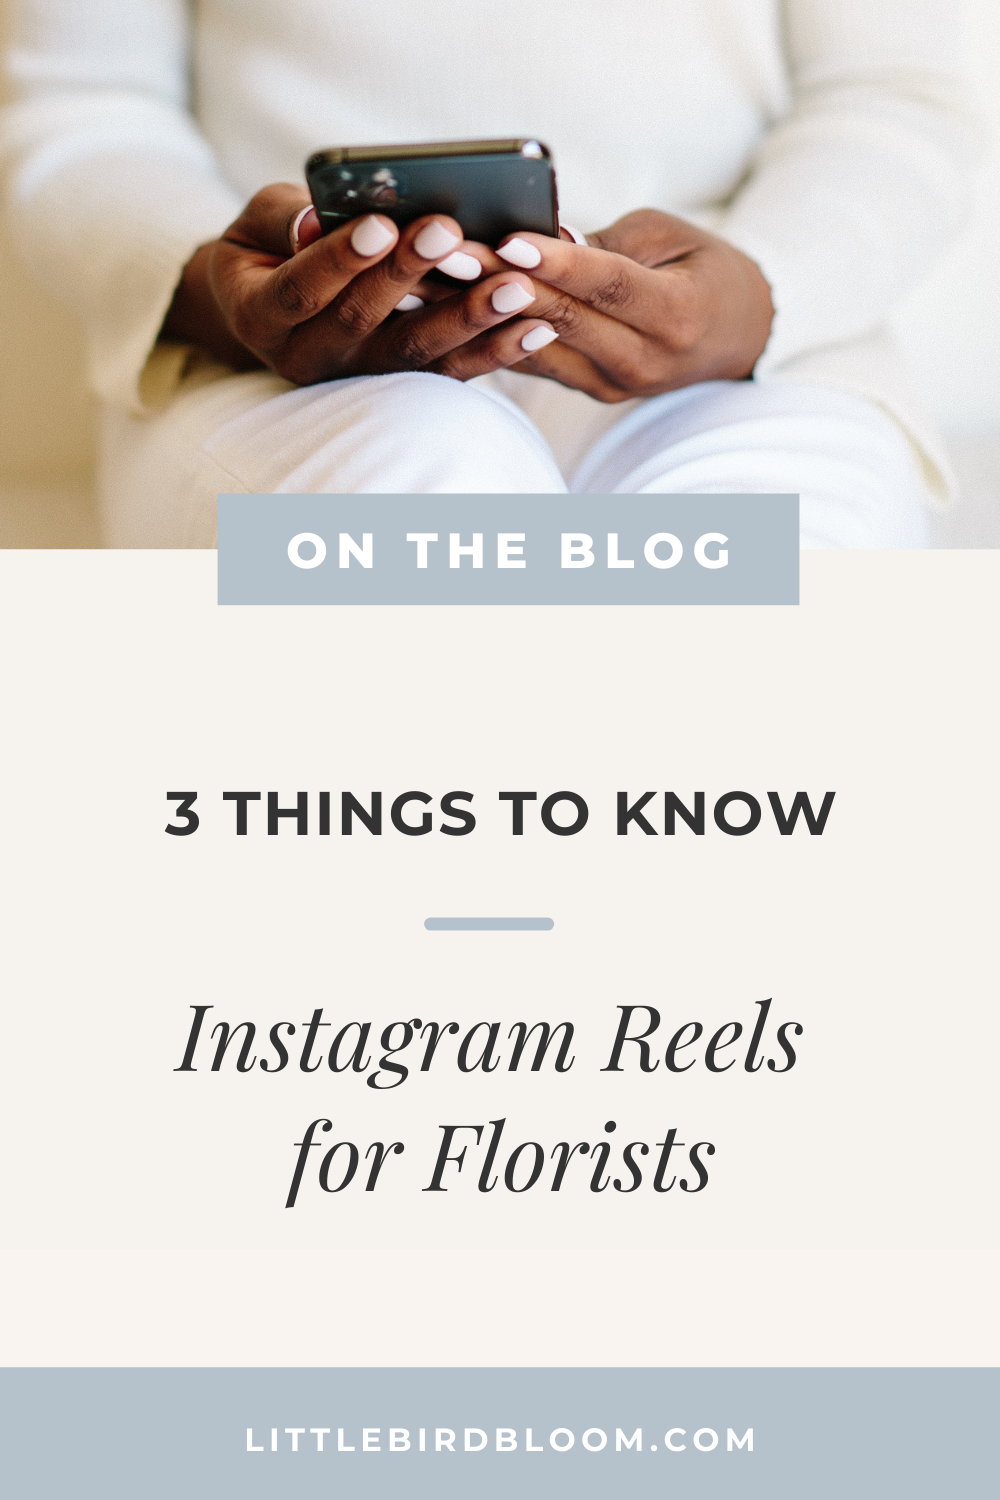 Instagram Reels for Florists